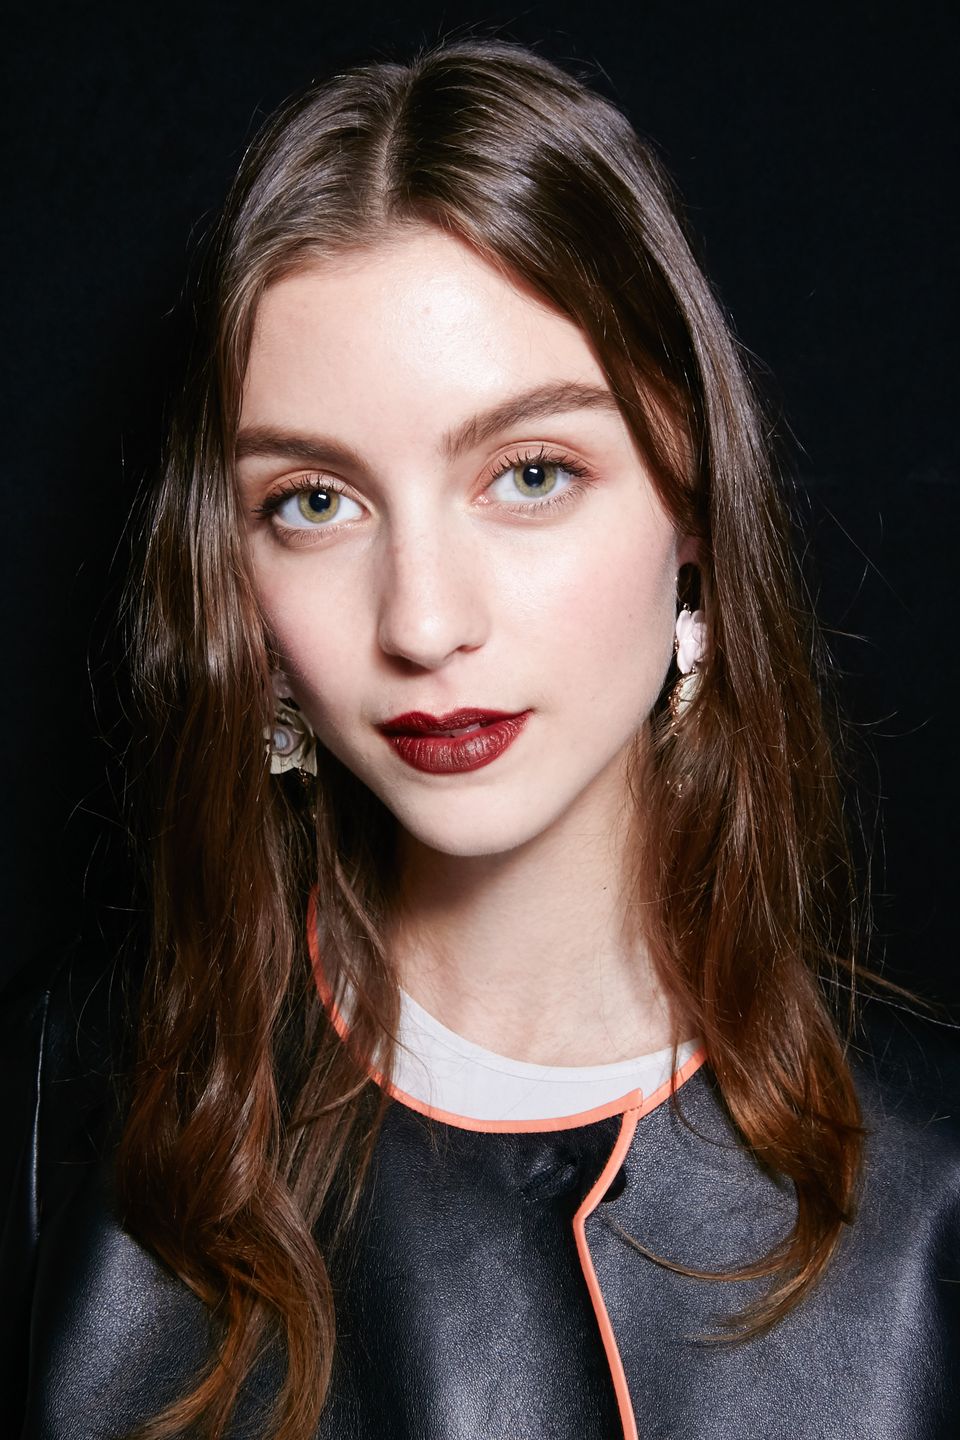 Herbst-Make-up-Trend: Brauner Lippenstift bei Emporio Armani